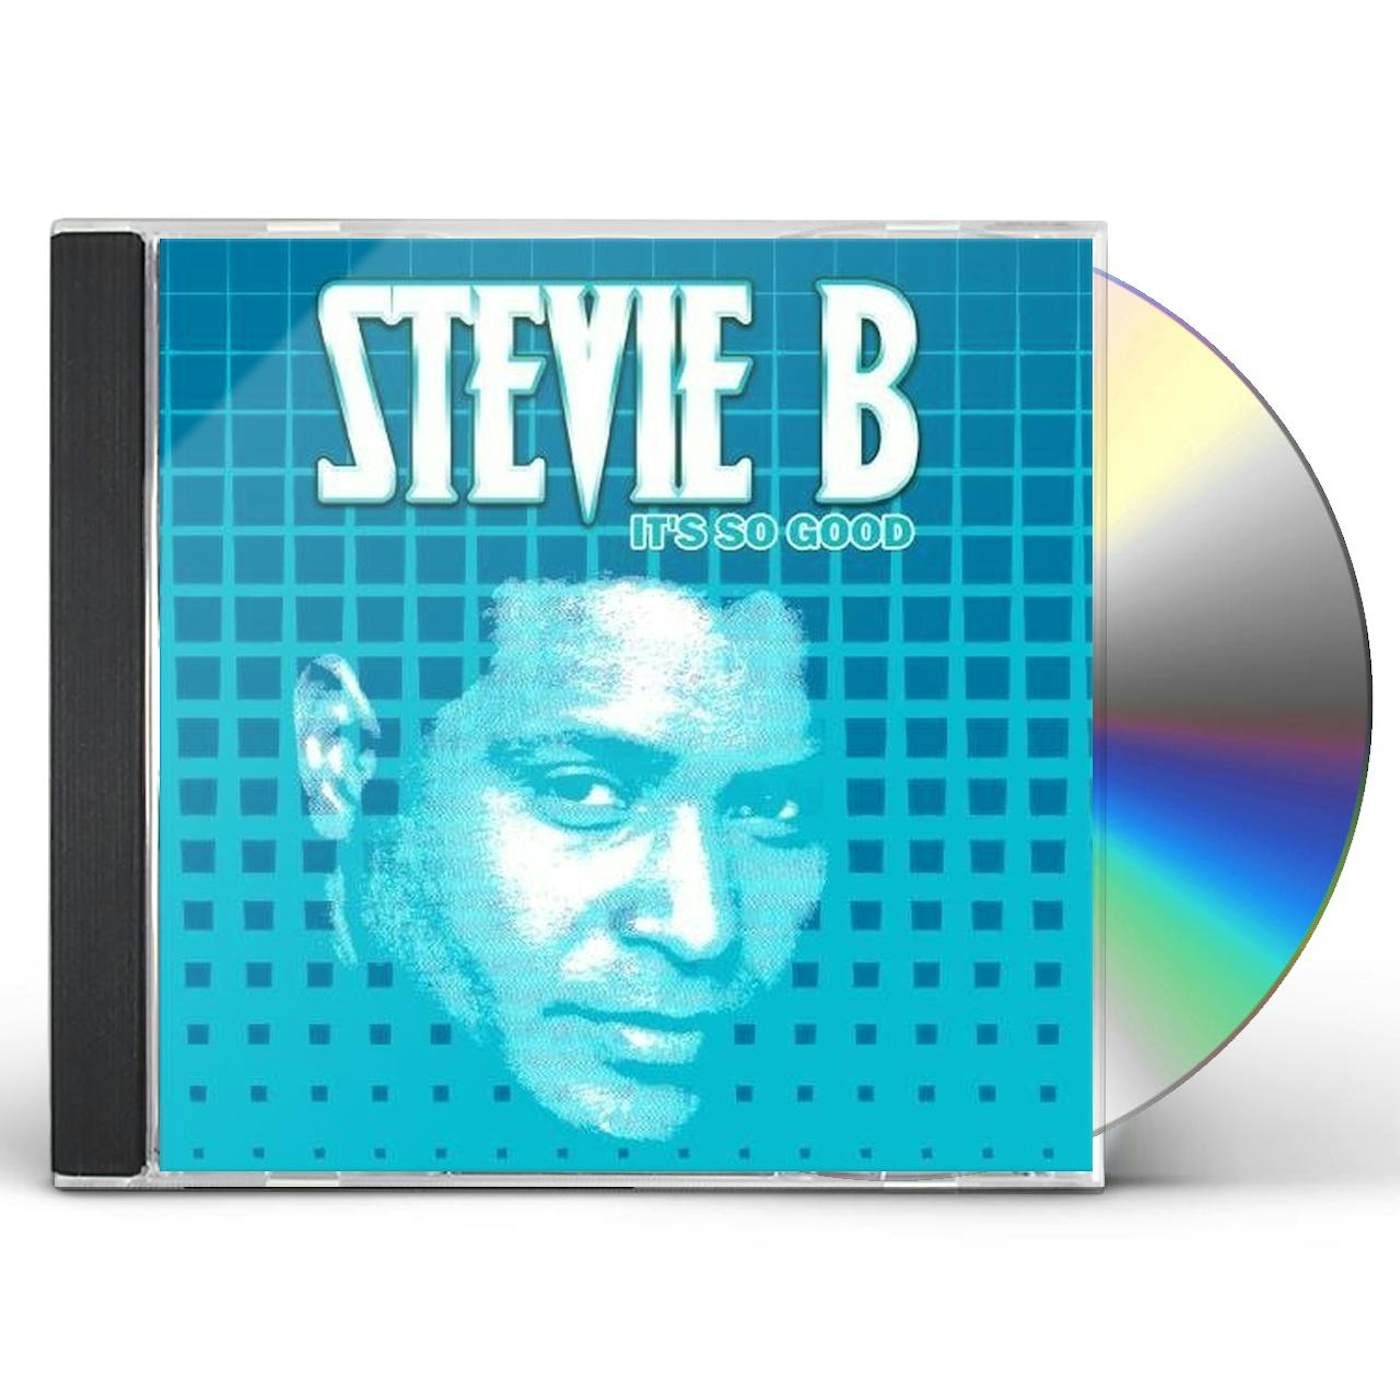 Stevie B IT'S SO GOOD CD